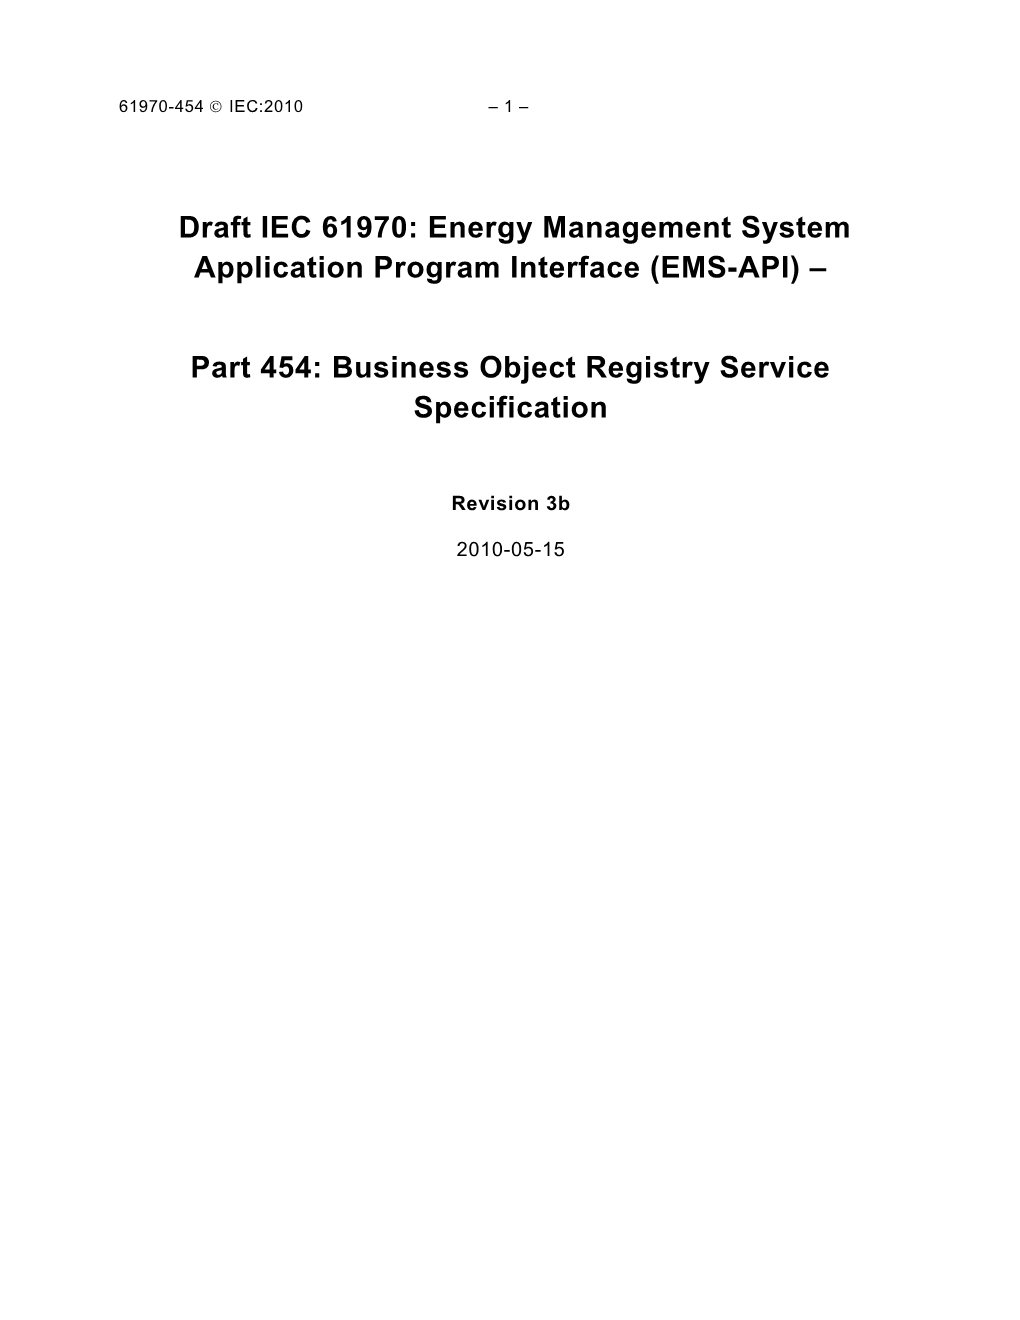 IEC CIM 61970 Part 454 Business Object Registry Service